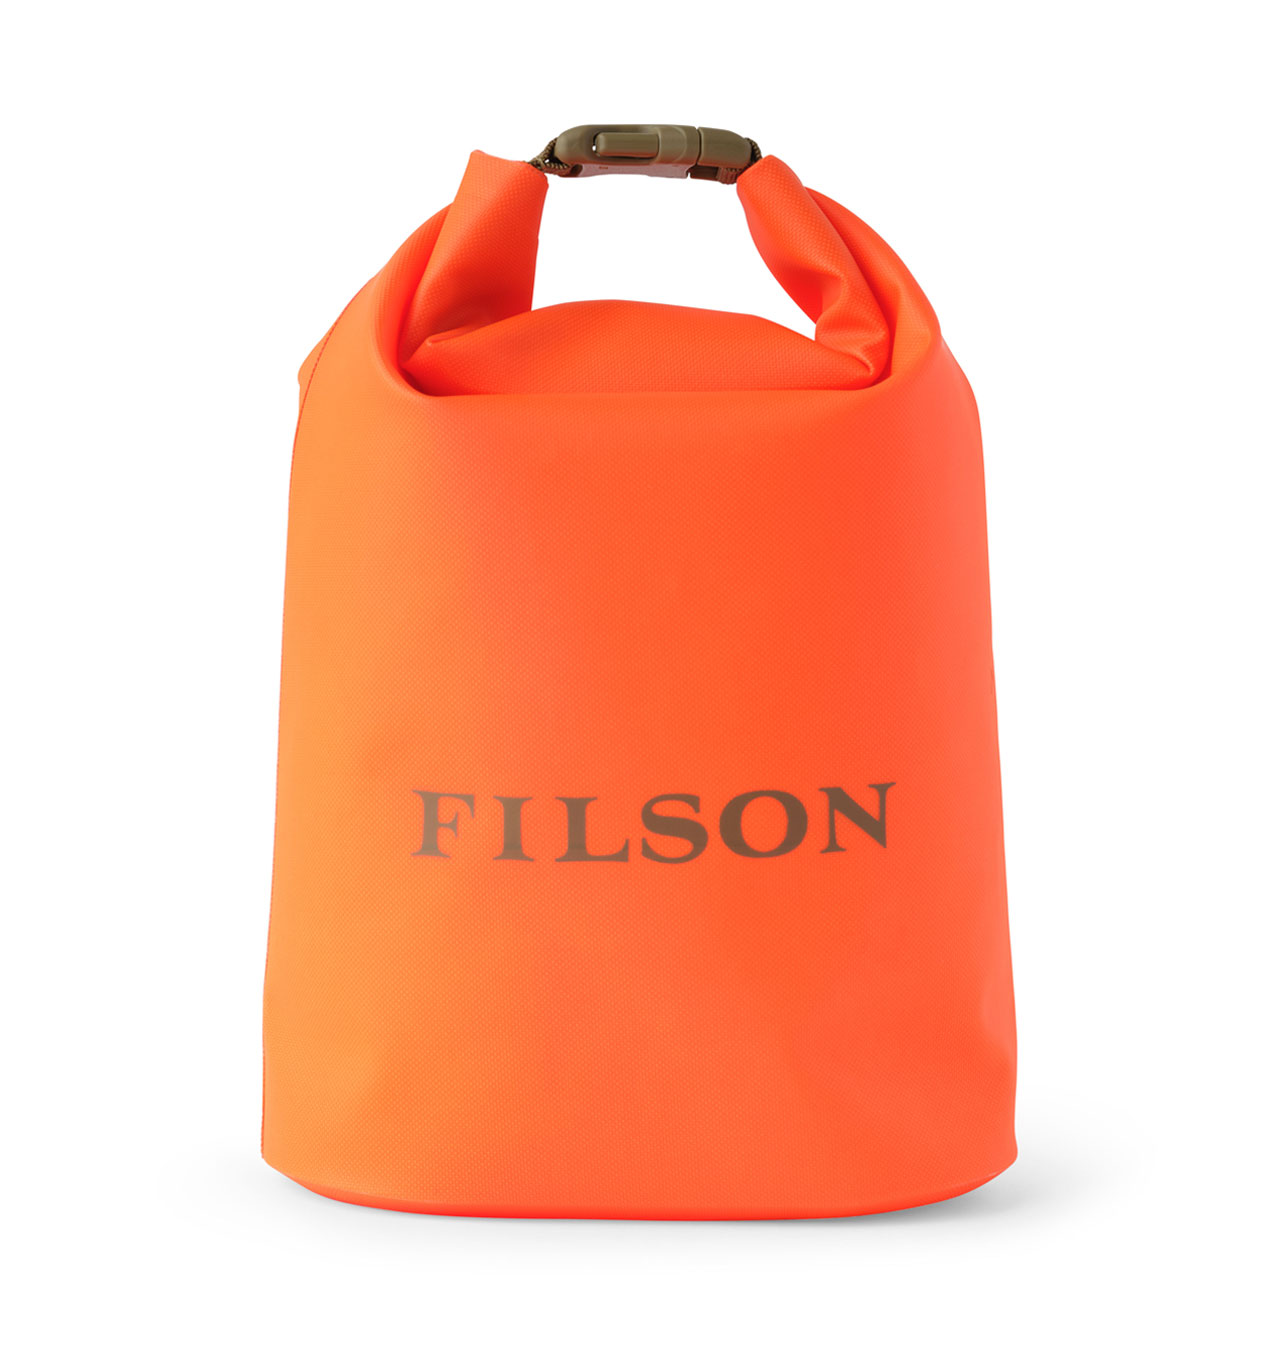 Filson - Dry Bag Small - Flame